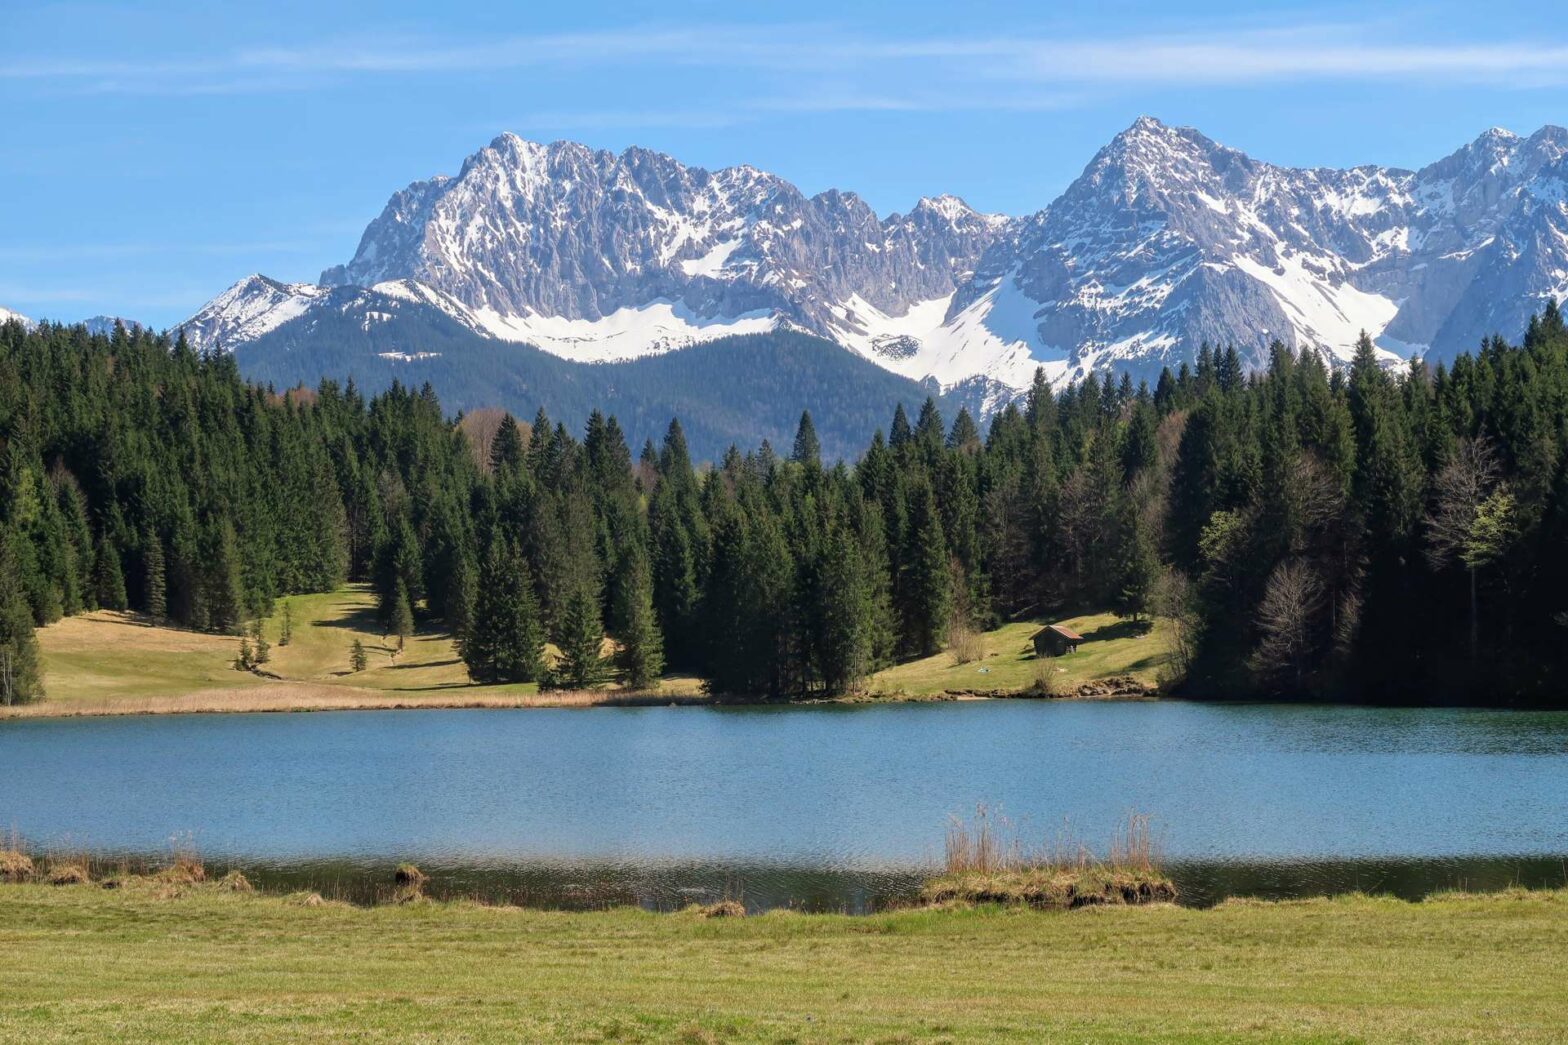 Views across Geroldsee in the Bavarian Alps